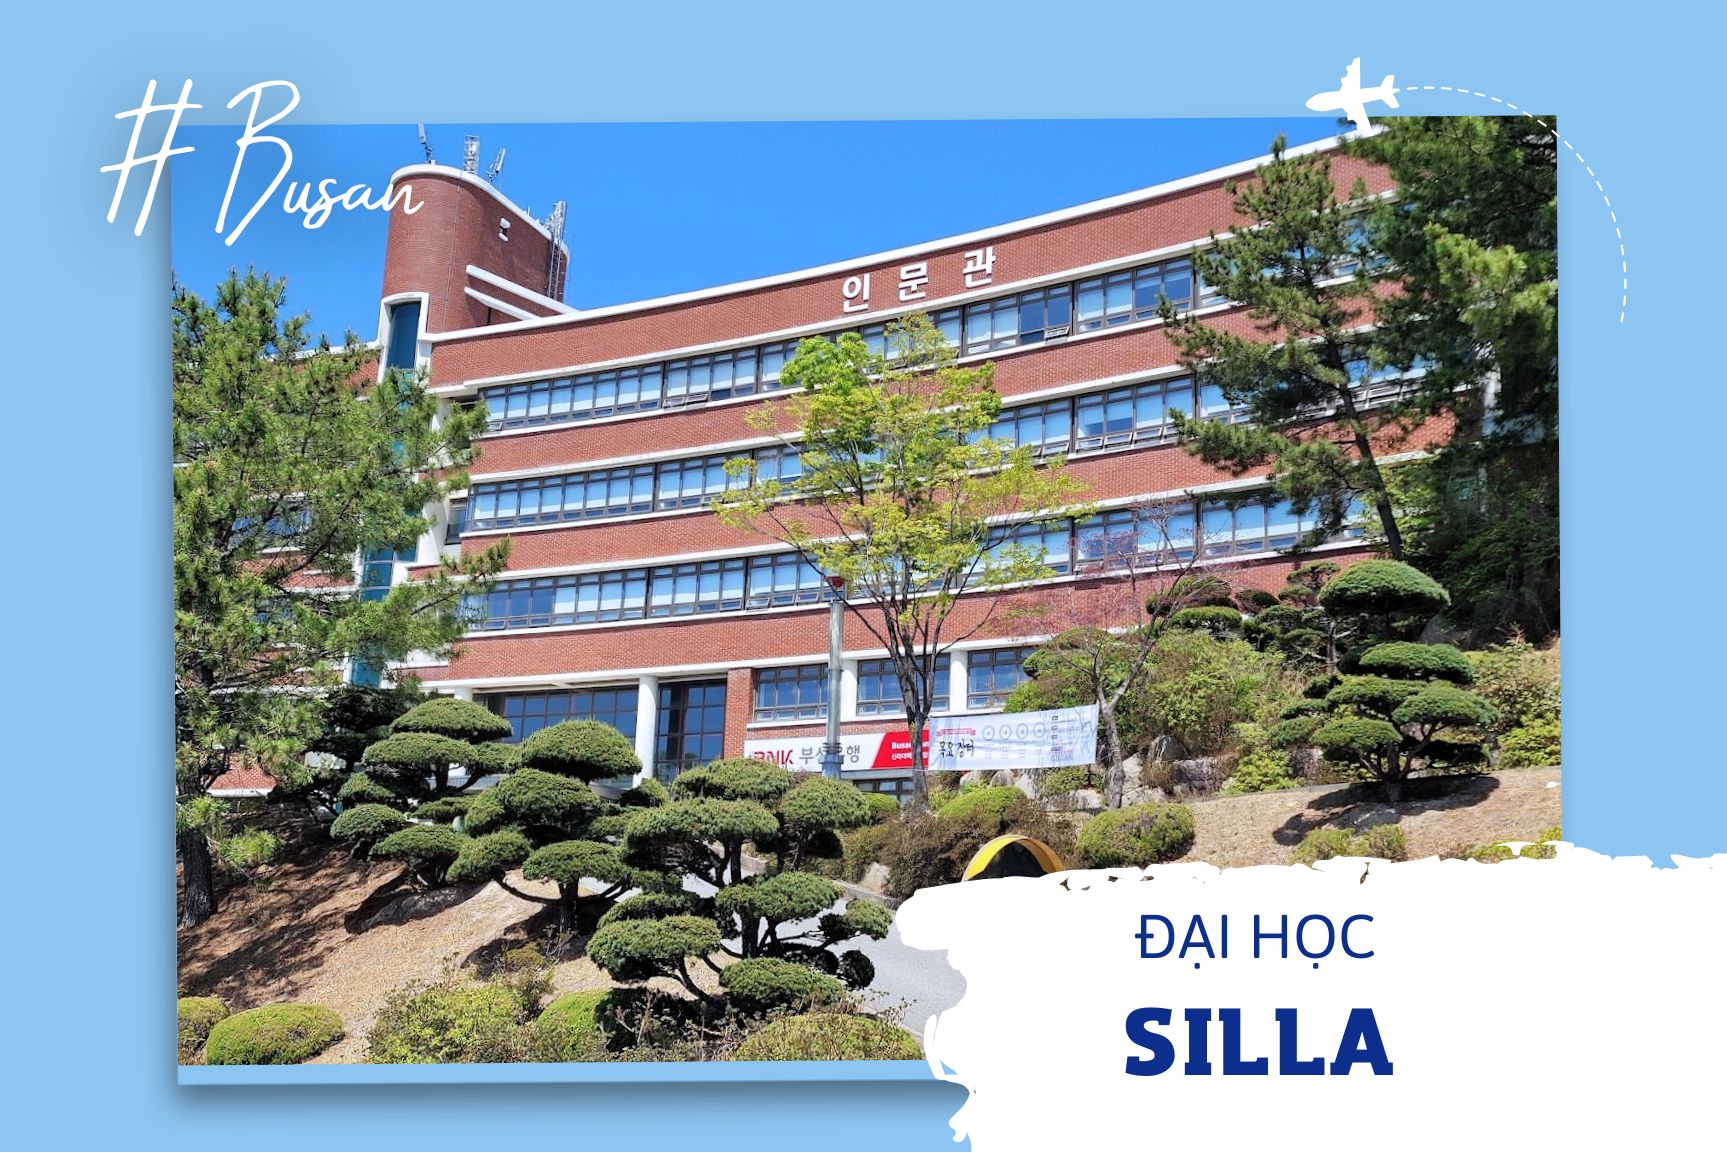 Đại học Silla - 신라대학교